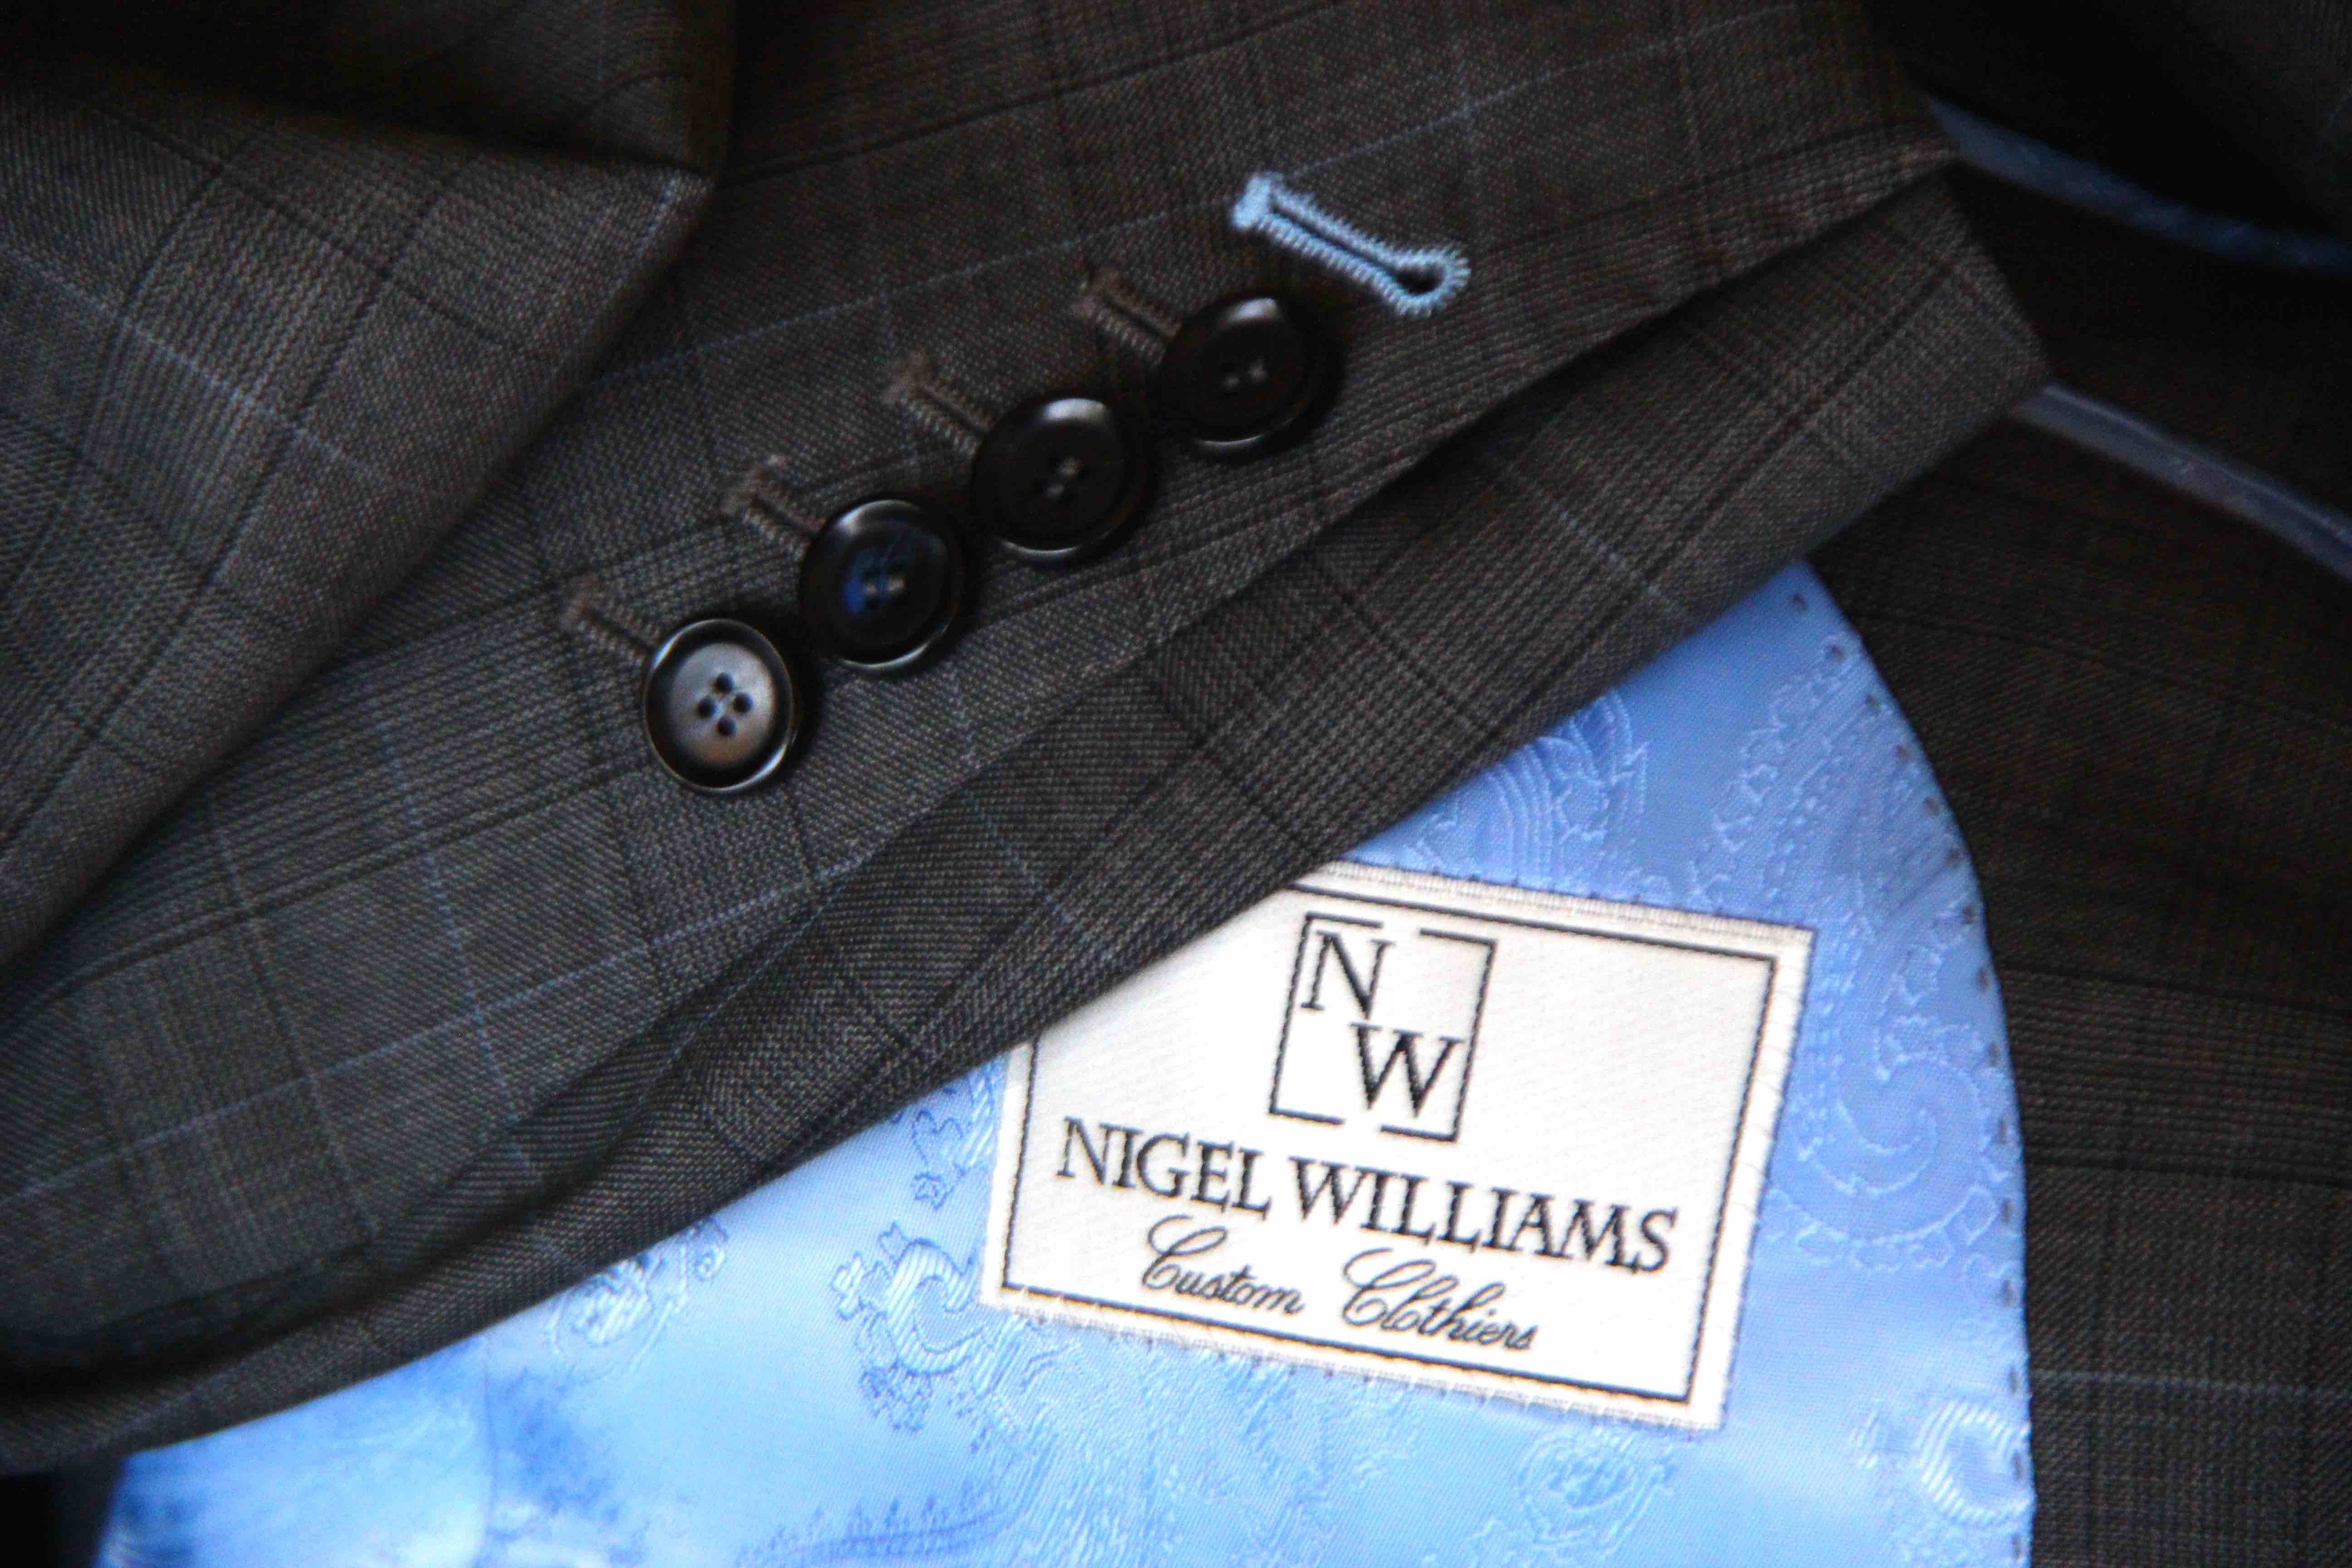 Nigel Williams Clothiers